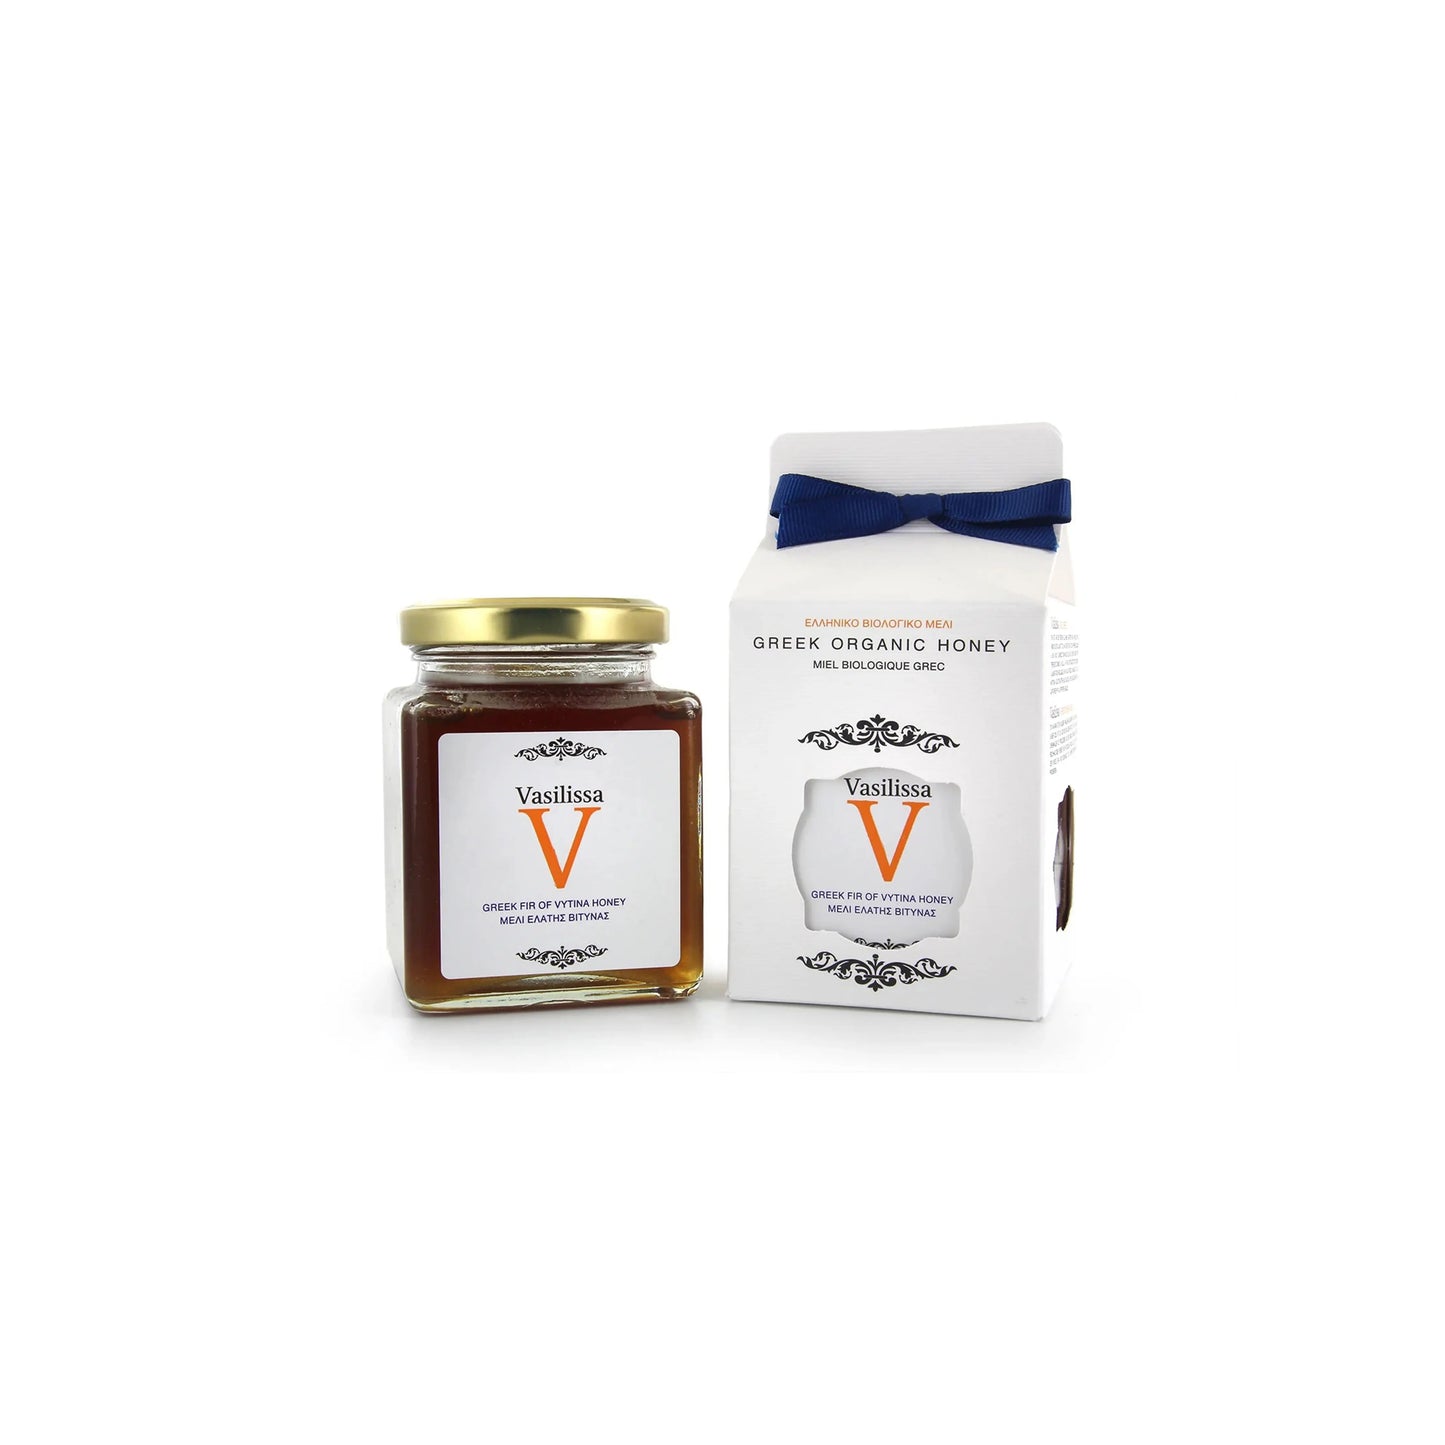 Biologische dennenhoning met vanille van Vityna, Griekenland 250g Vasilissa - Honingwinkel